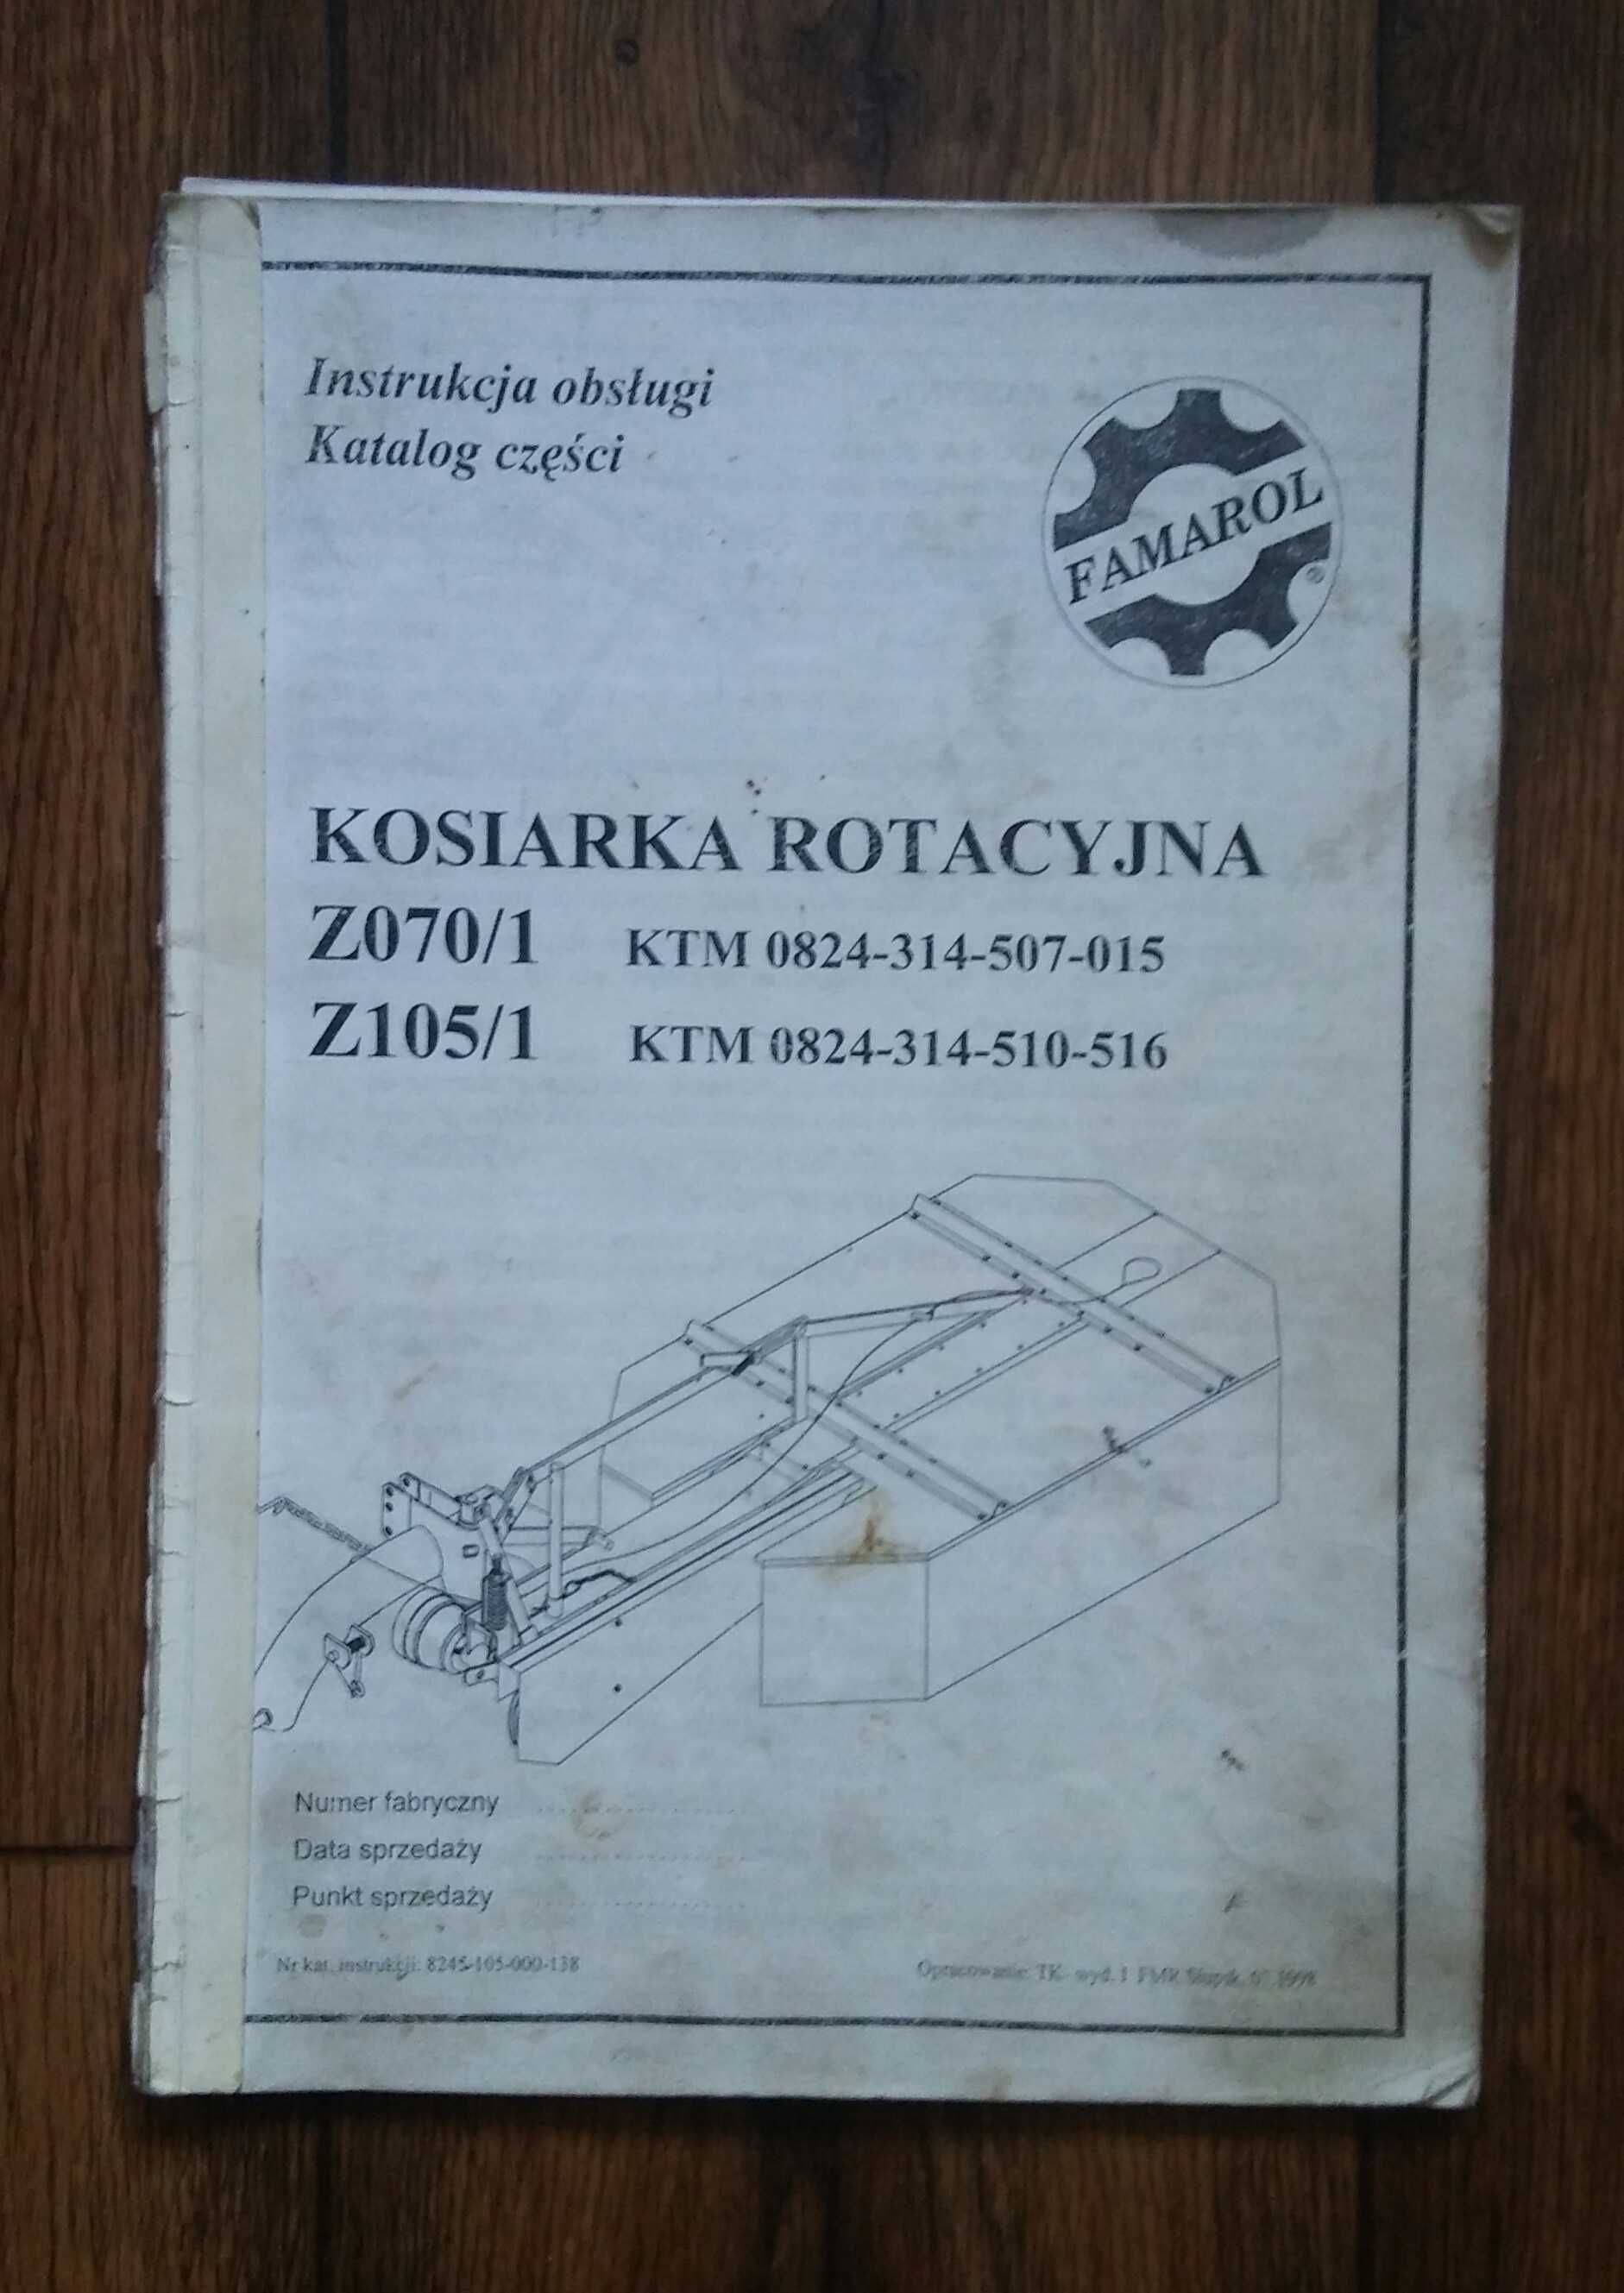 Katalog części kosiarka rotacyjna Z070 105 instrukcja obsługi Famarol